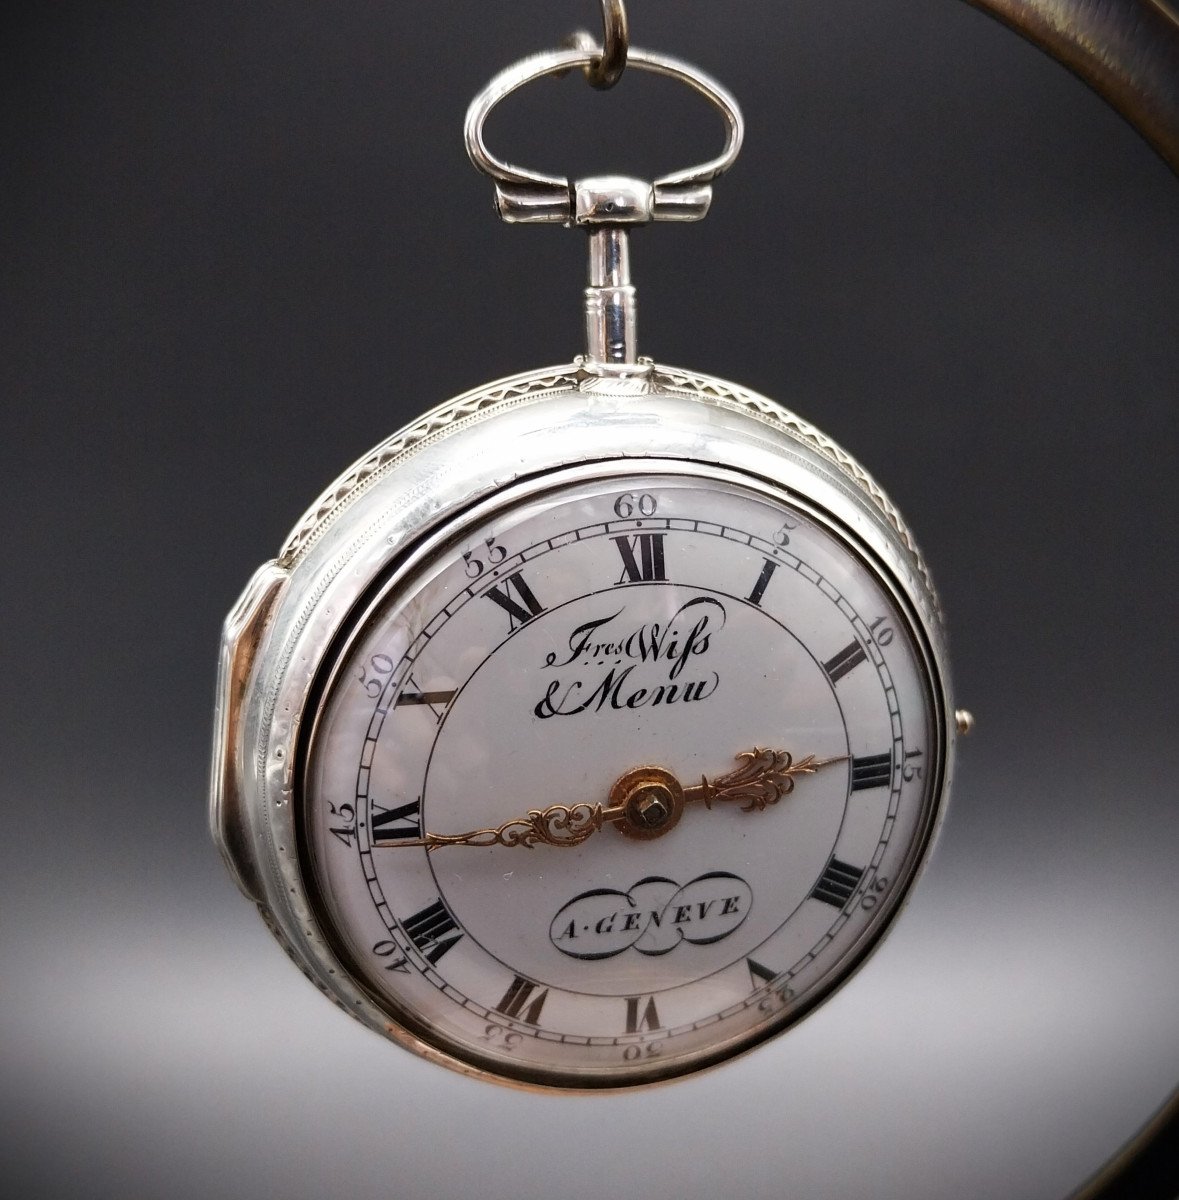 Orologio da tasca con scappamento a verga, firmato "Freres Wiss et Menu a Geneve", fine 700-photo-2